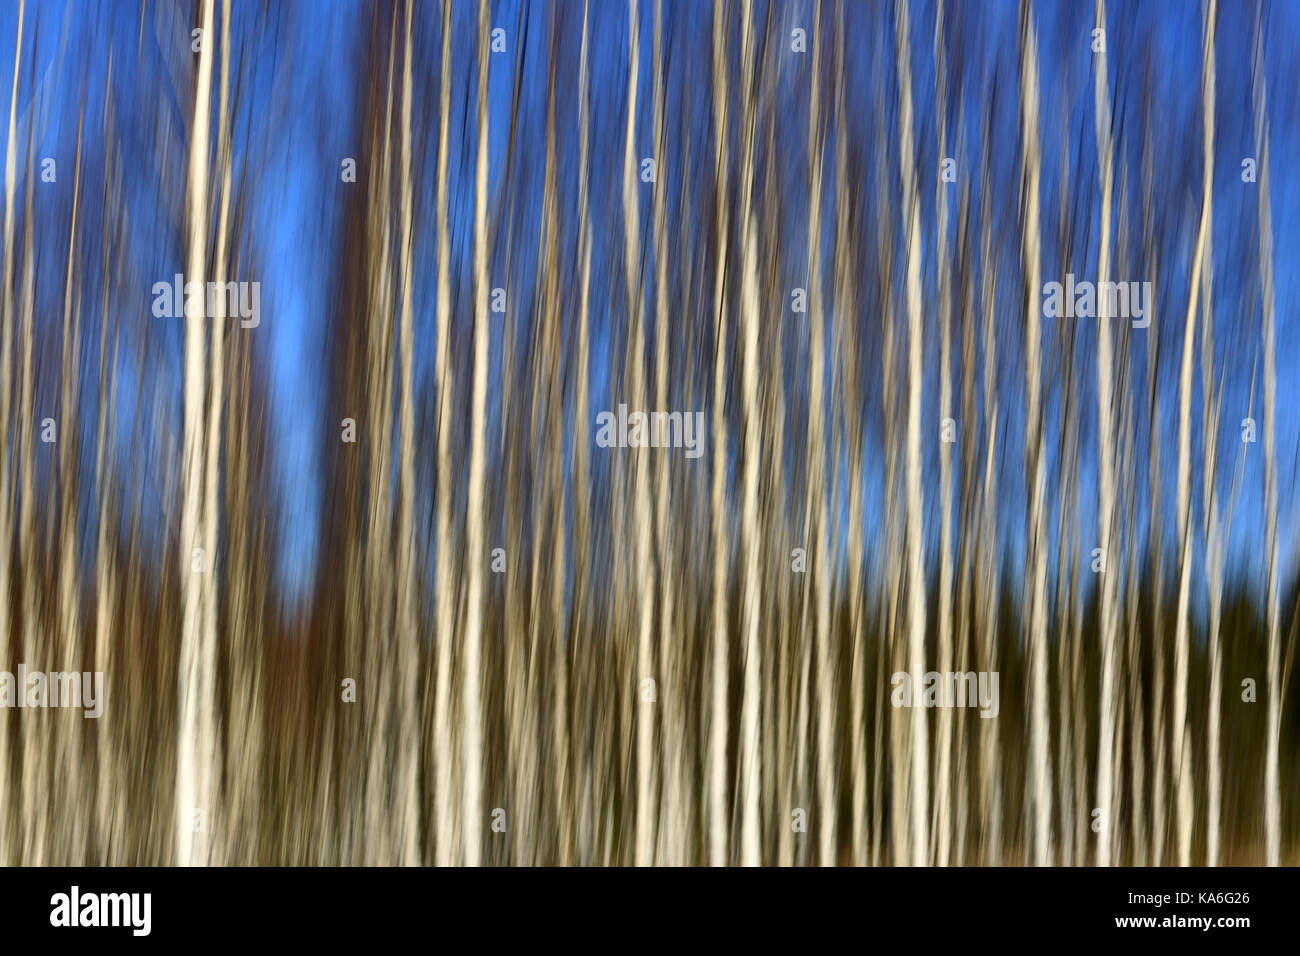 Panorama artístico con troncos de árboles de abedul y cielo azul, efecto que se consigue con el desenfoque de movimiento en la cámara. Foto de stock